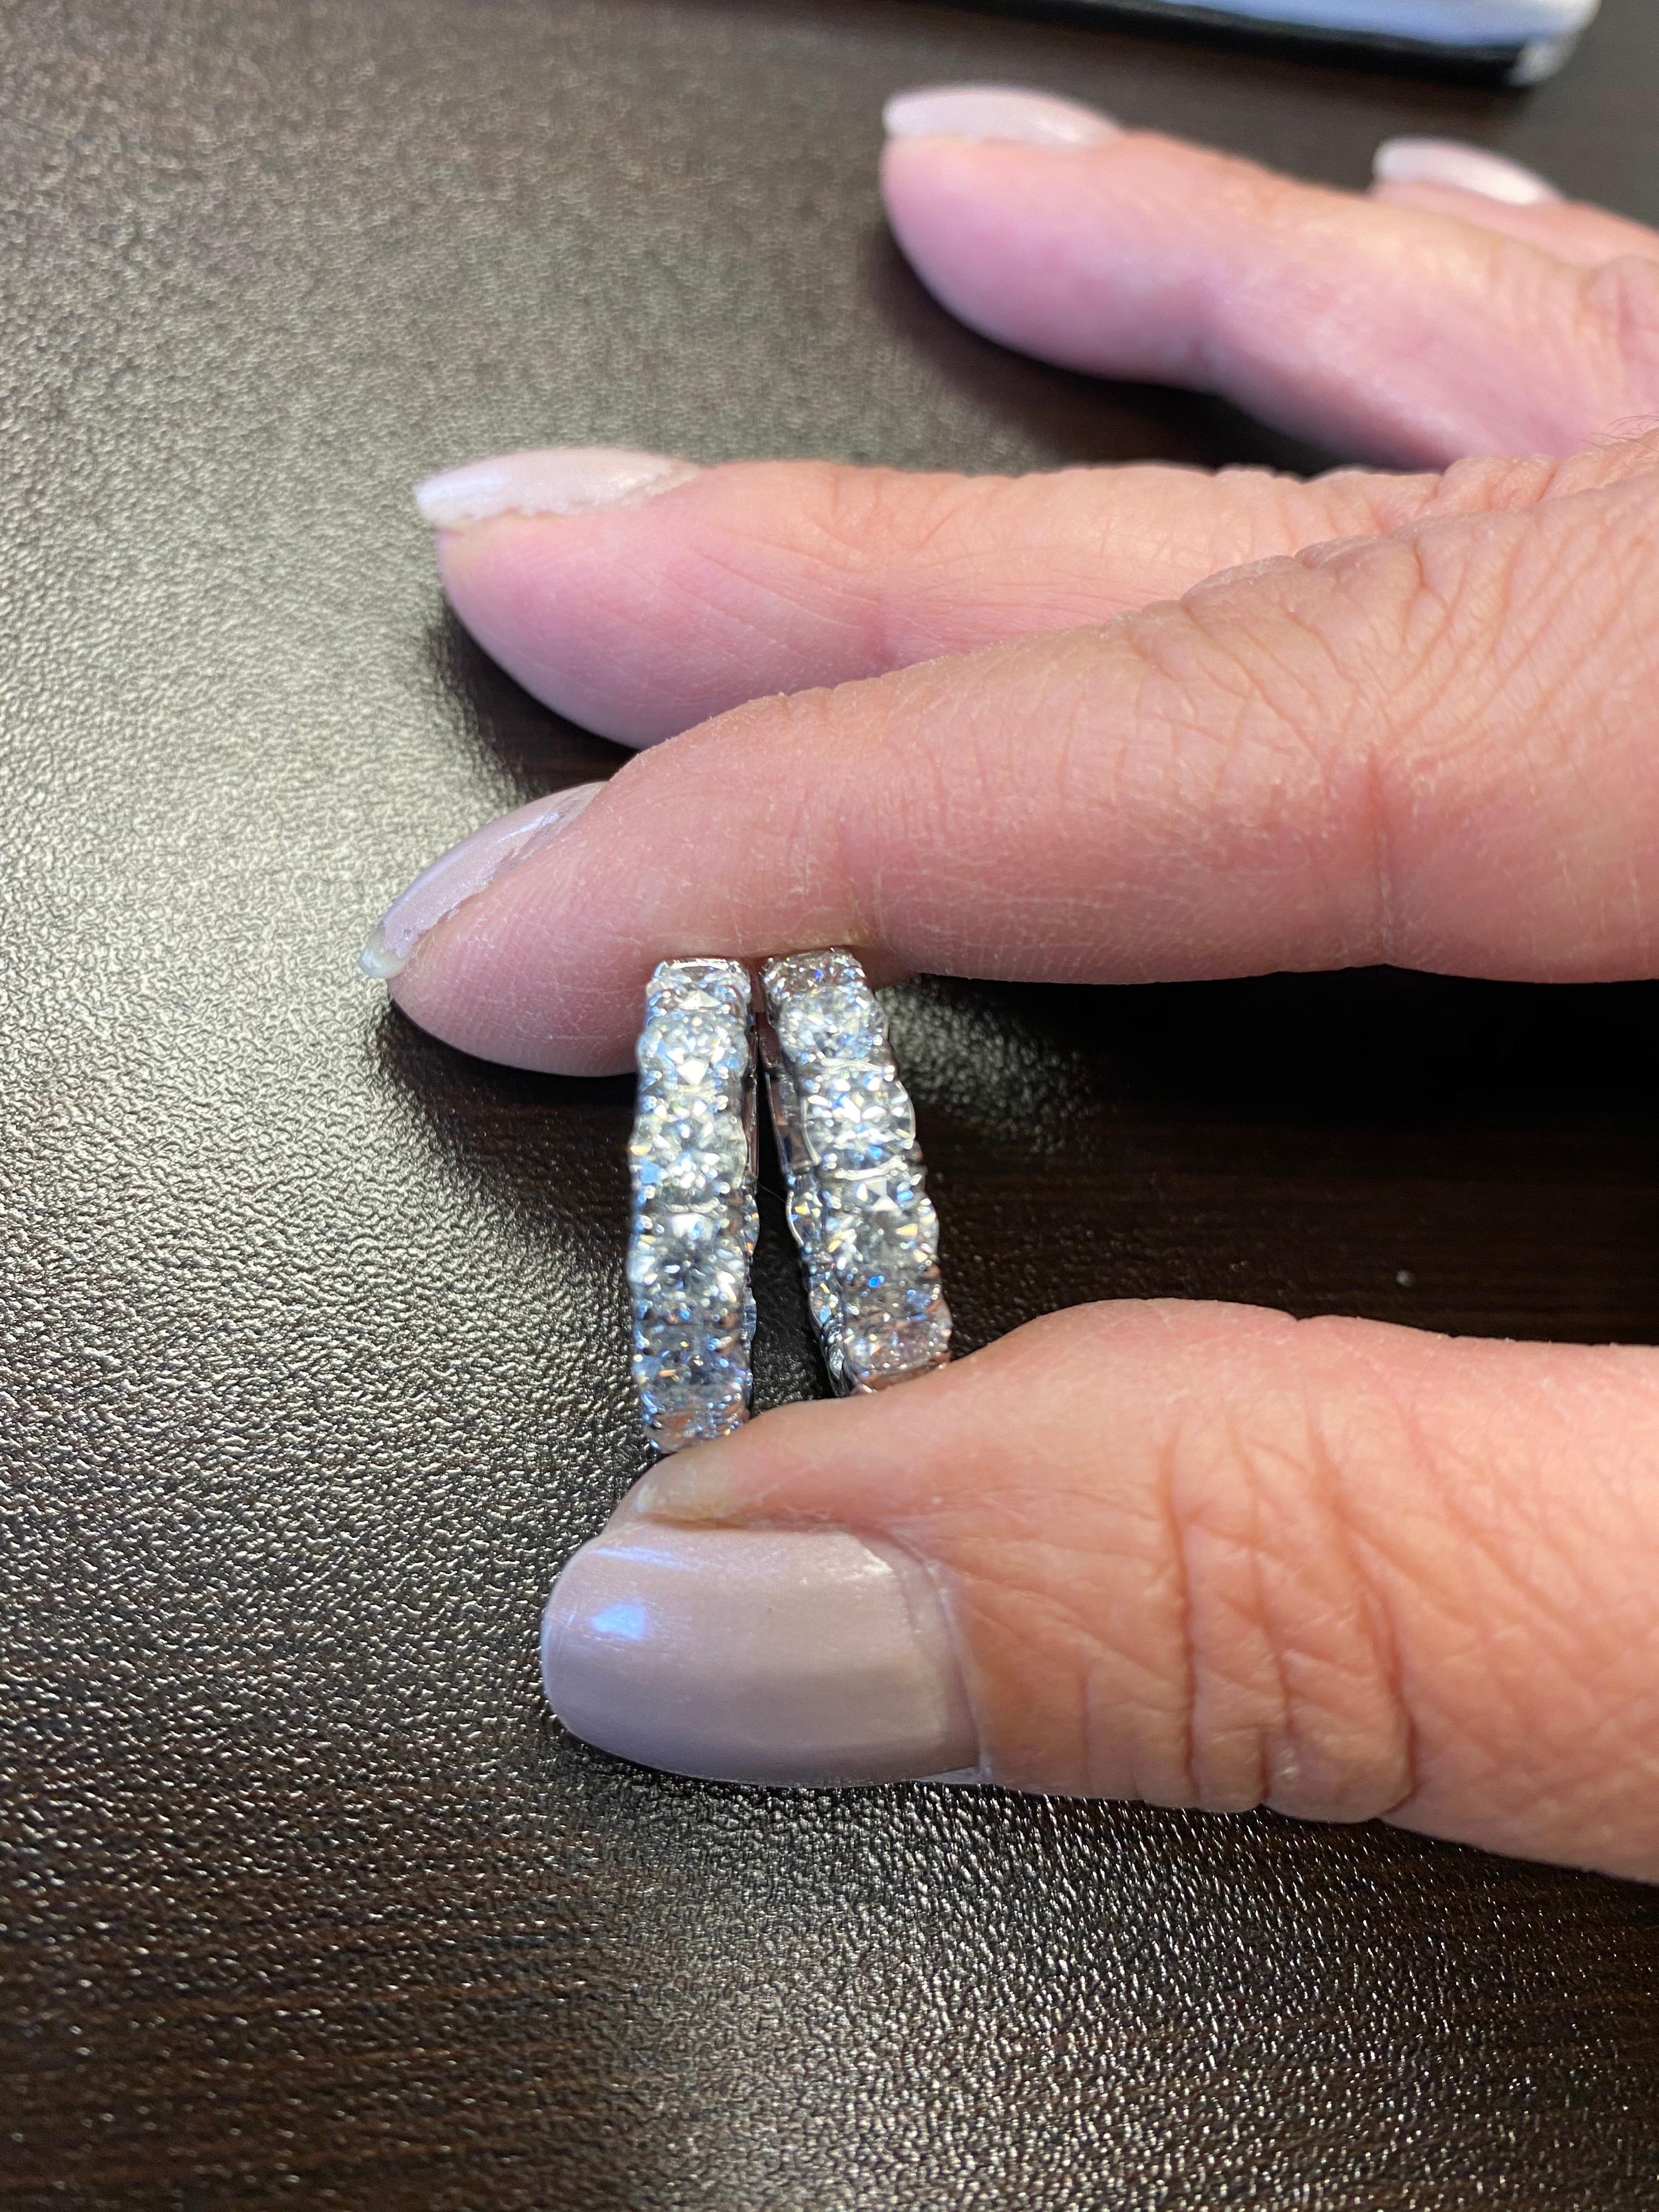 Boucles d'oreilles en or blanc 14 carats serties de diamants. Chaque pierre pèse 0,35 carats. La couleur des pierres est G, la clarté est SI1-SI2. Le poids total des diamants des boucles d'oreilles est de 6,02 carats. Le diamètre des cerceaux est de